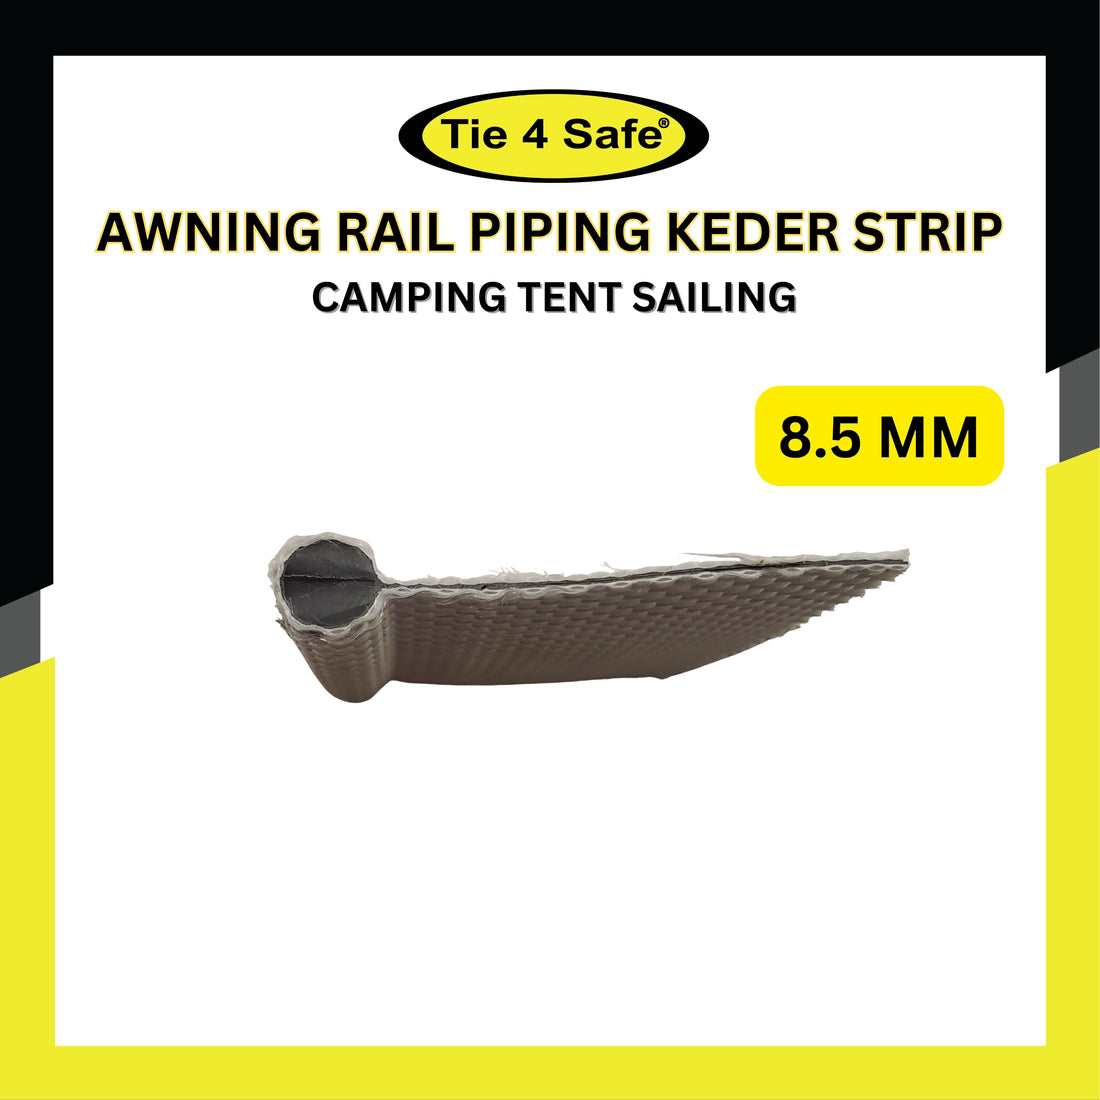 Awning Rail Piping Keder Strip